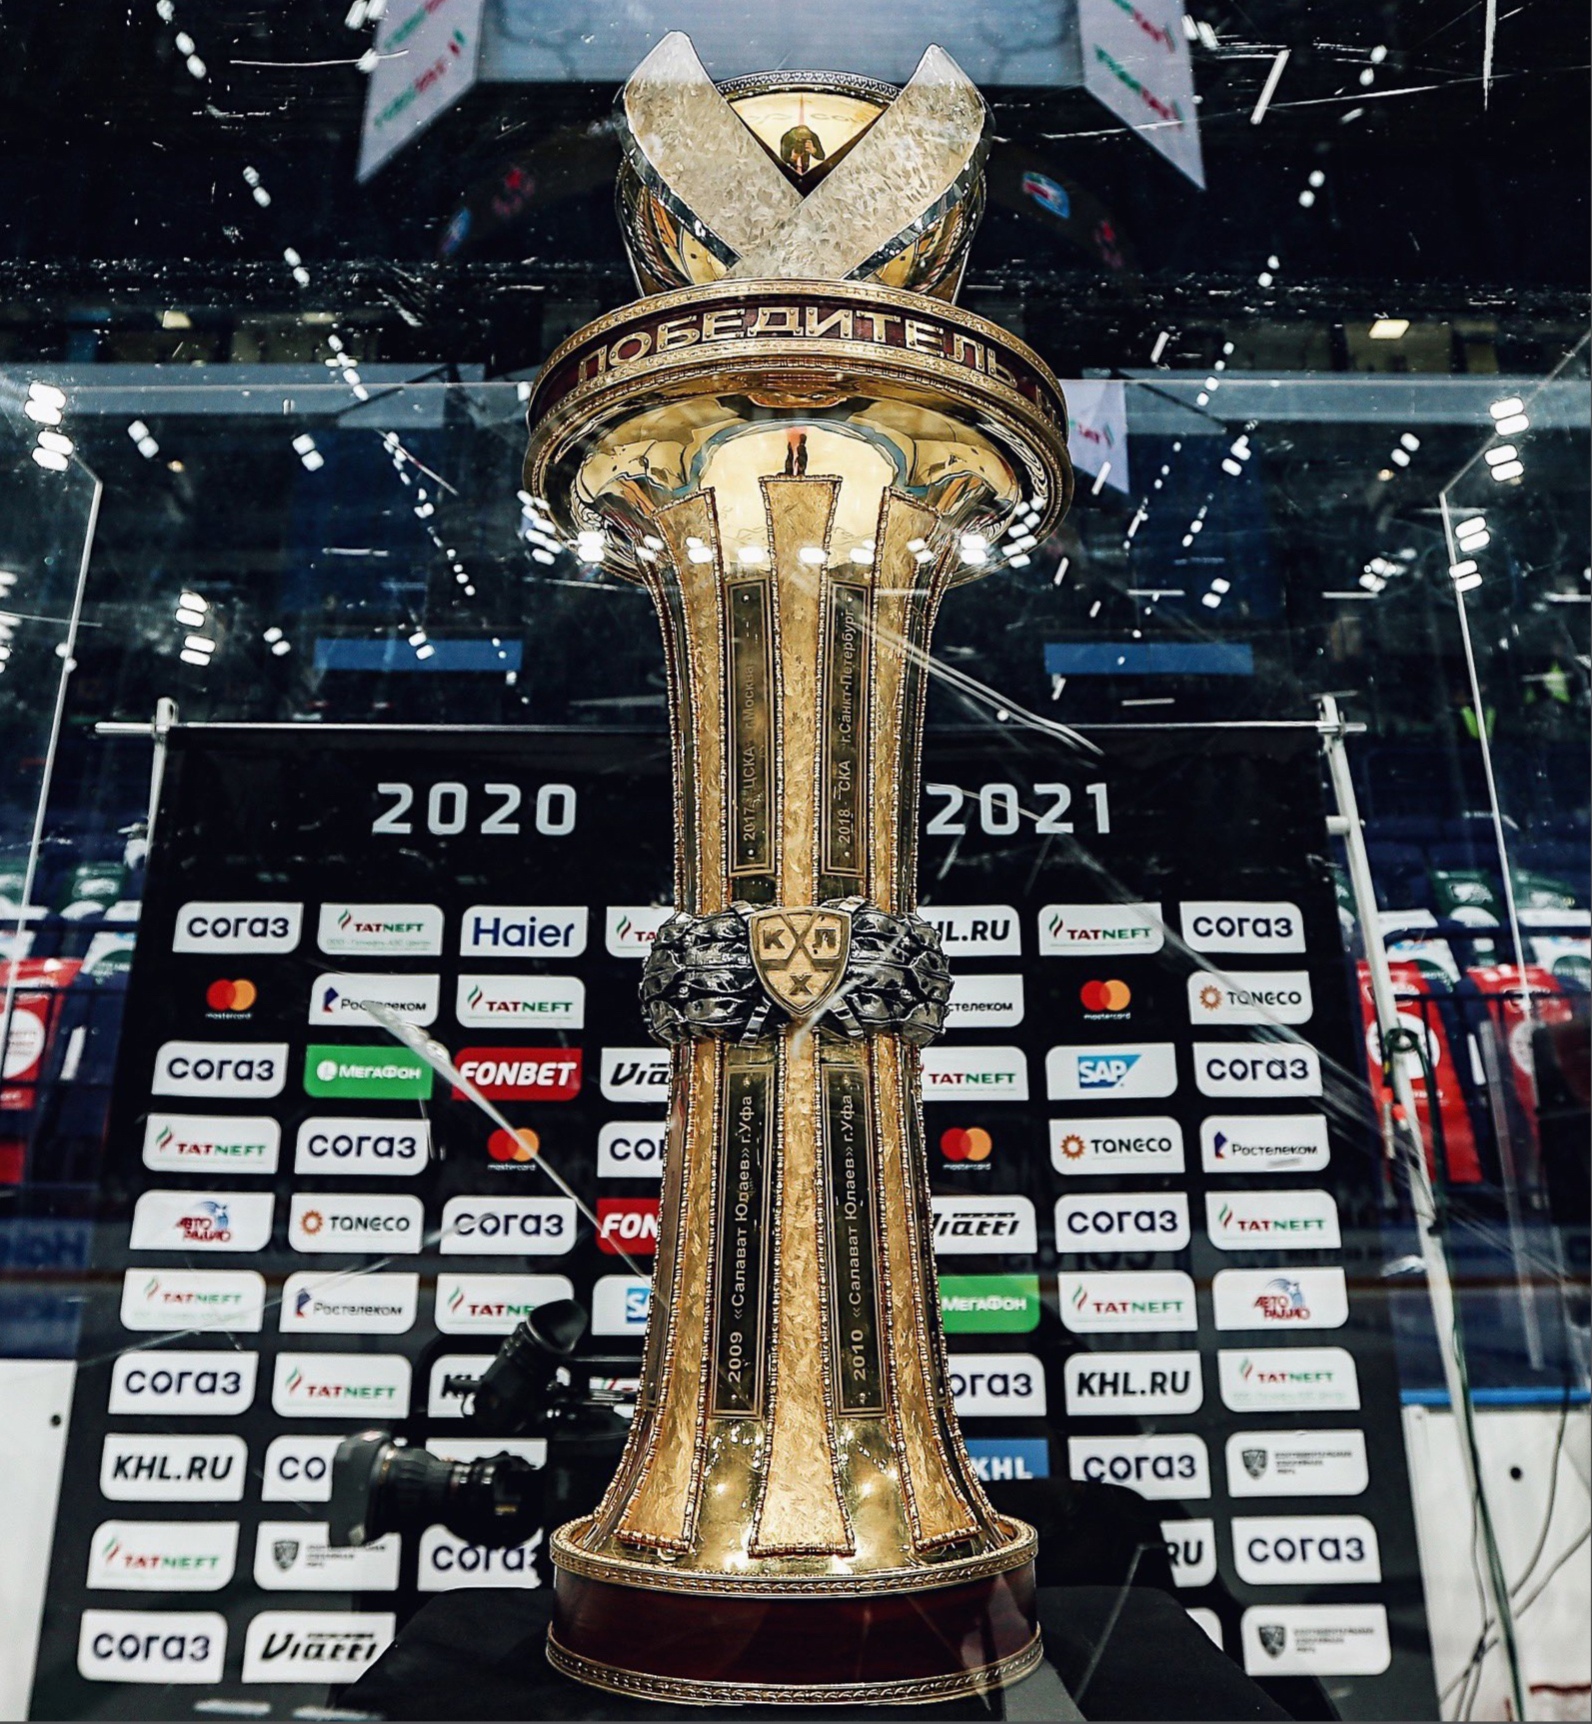 中央陆军2020-21赛季常规赛冠军 先锋赢下切尔内绍夫赛区